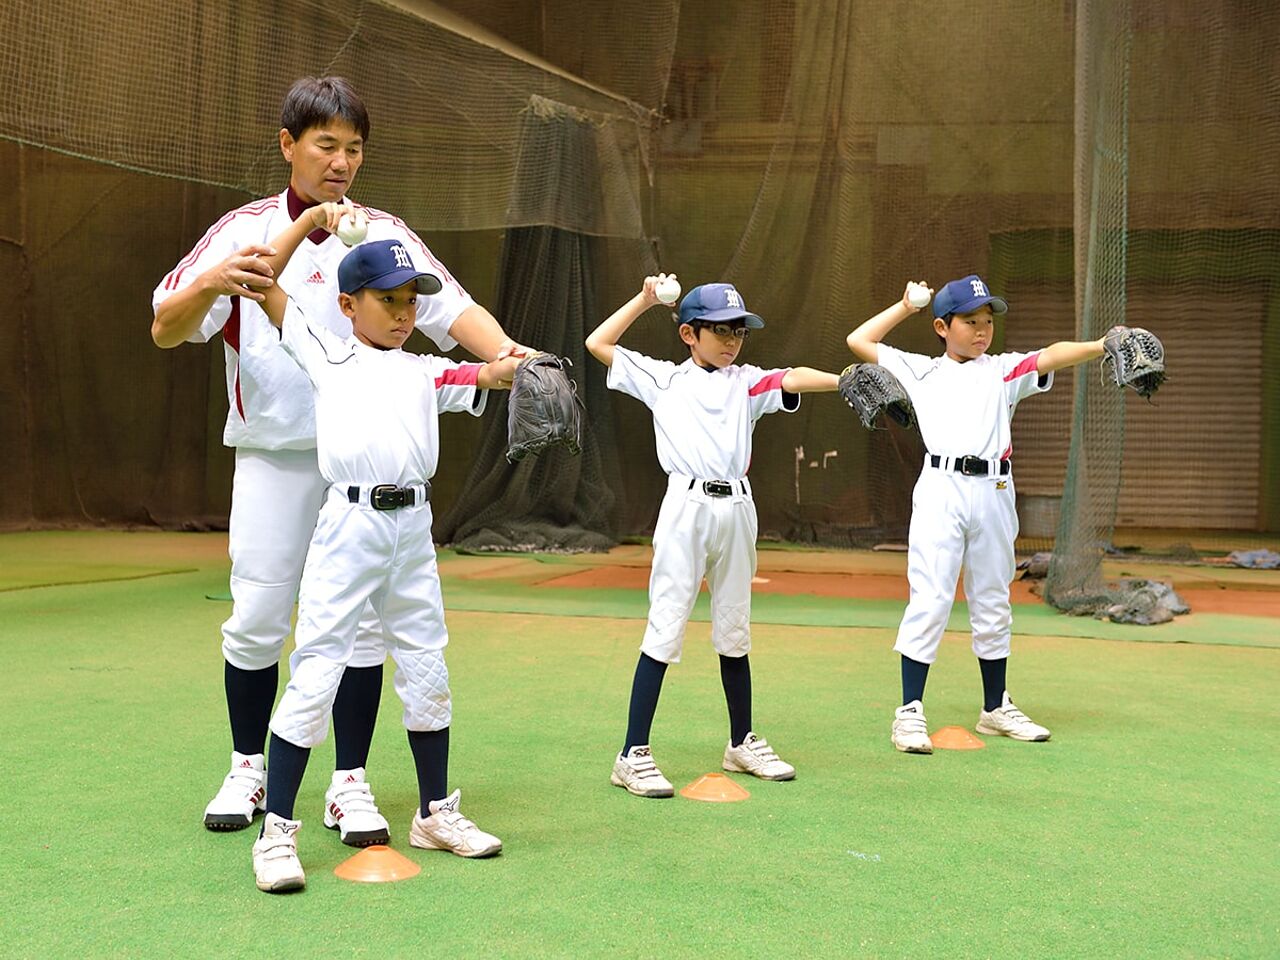 大石さんが子どもたちと野球の練習をおこなう様子が分かる画像